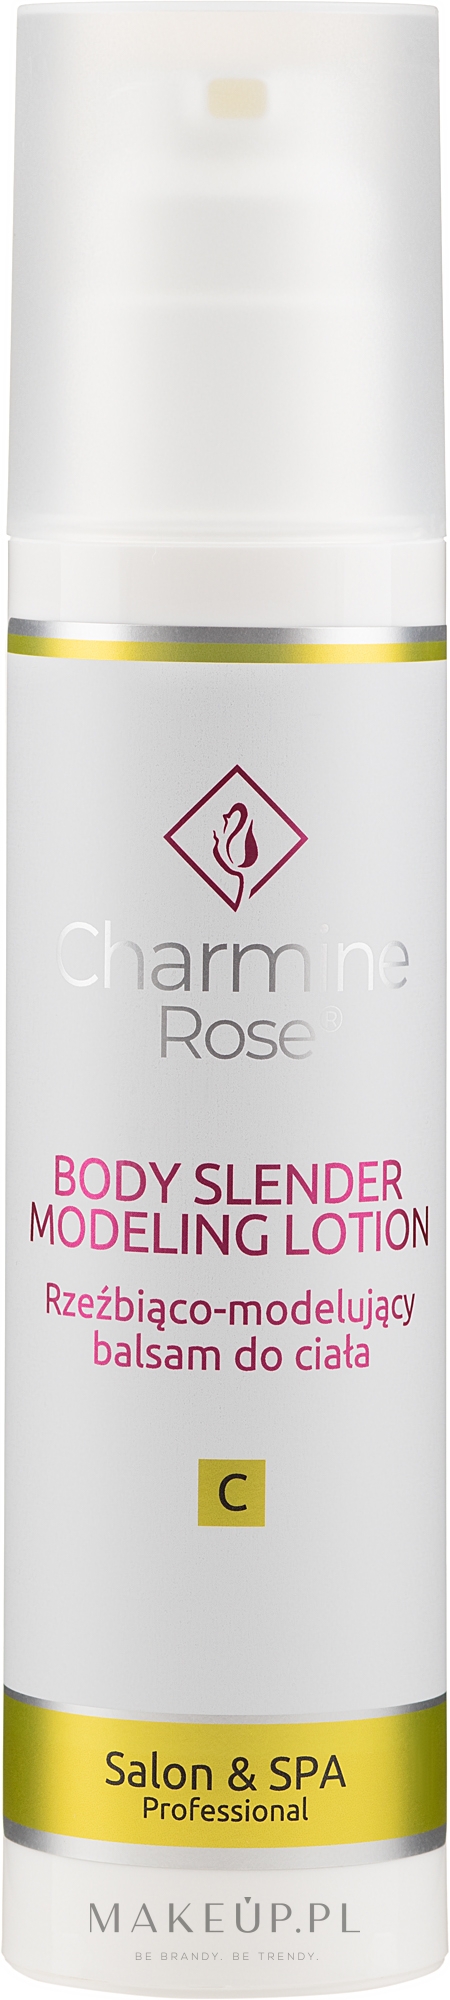 Rzeźbiąco-modelujący balsam do ciała - Charmine Rose Body Slender Modeling Lotion — Zdjęcie 200 ml